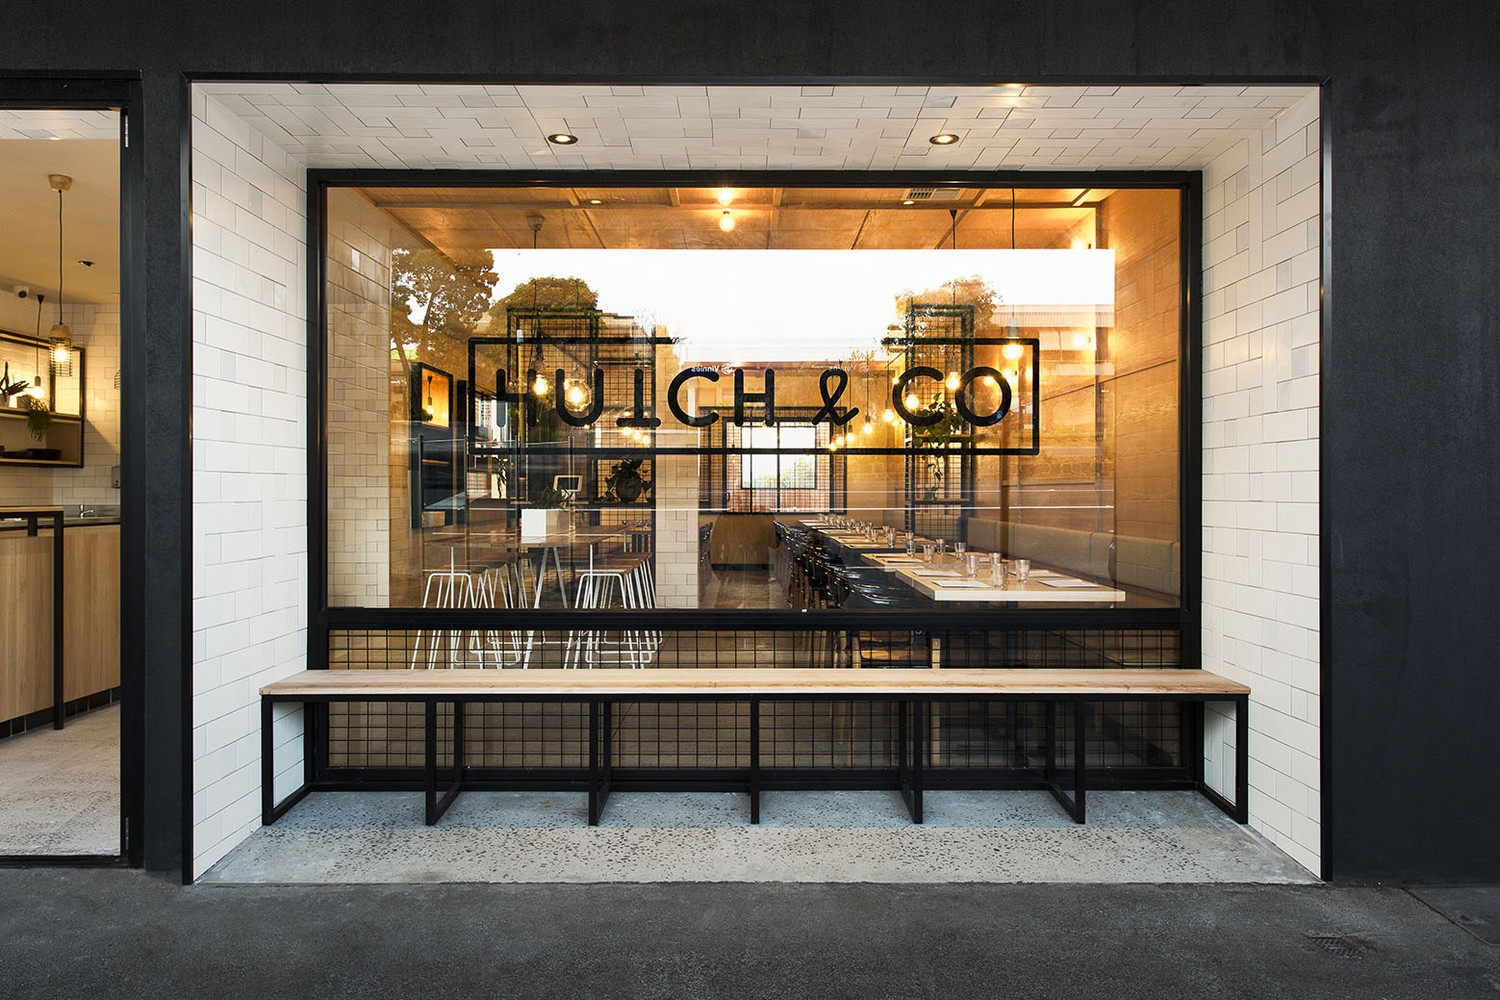 Thiết kế Quán cafe: Hutch & Co